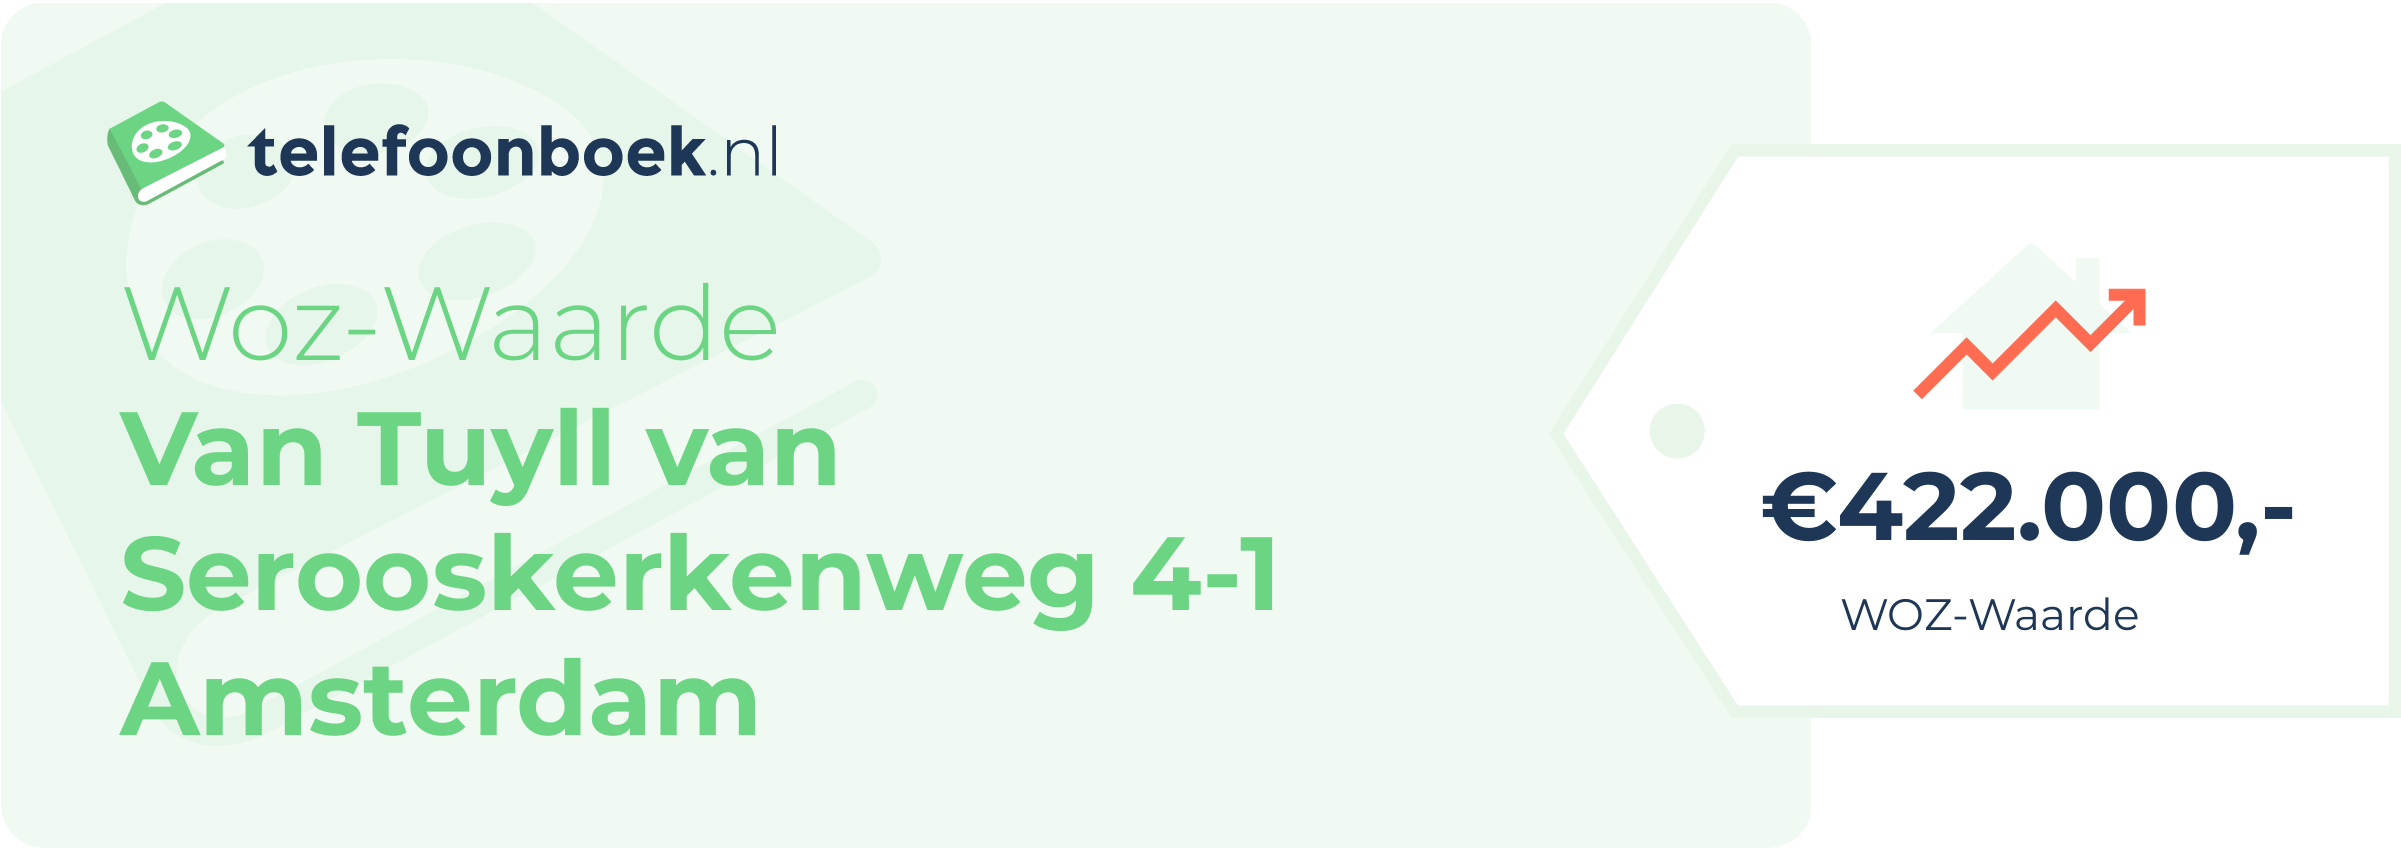 WOZ-waarde Van Tuyll Van Serooskerkenweg 4-1 Amsterdam